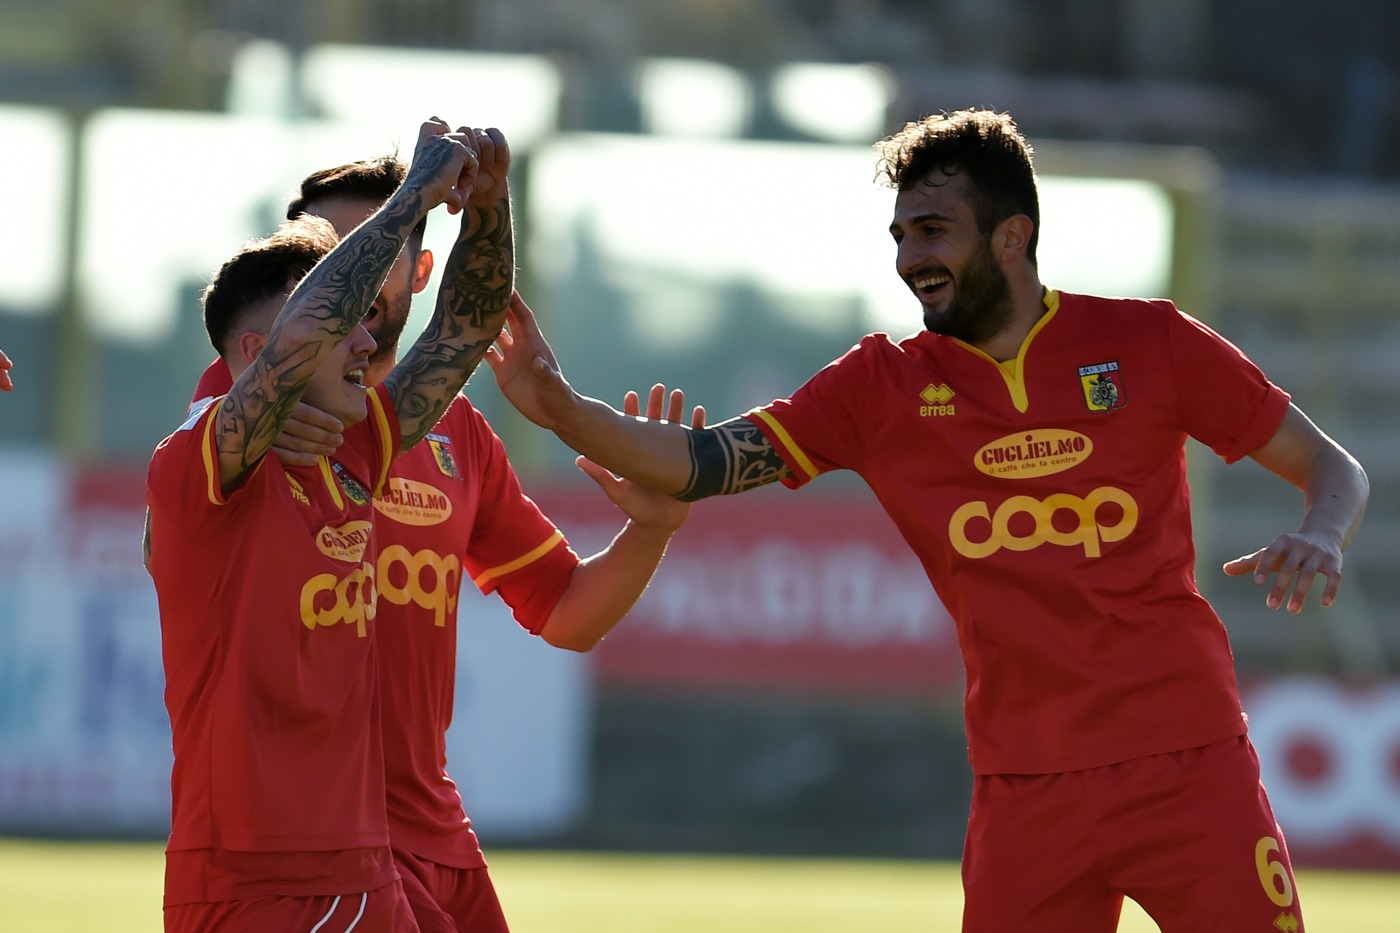 Play Off Serie C, FeralpiSalò-Catanzaro domenica 19 maggio: analisi e pronostico degli ottavi di finale dei play off promozione